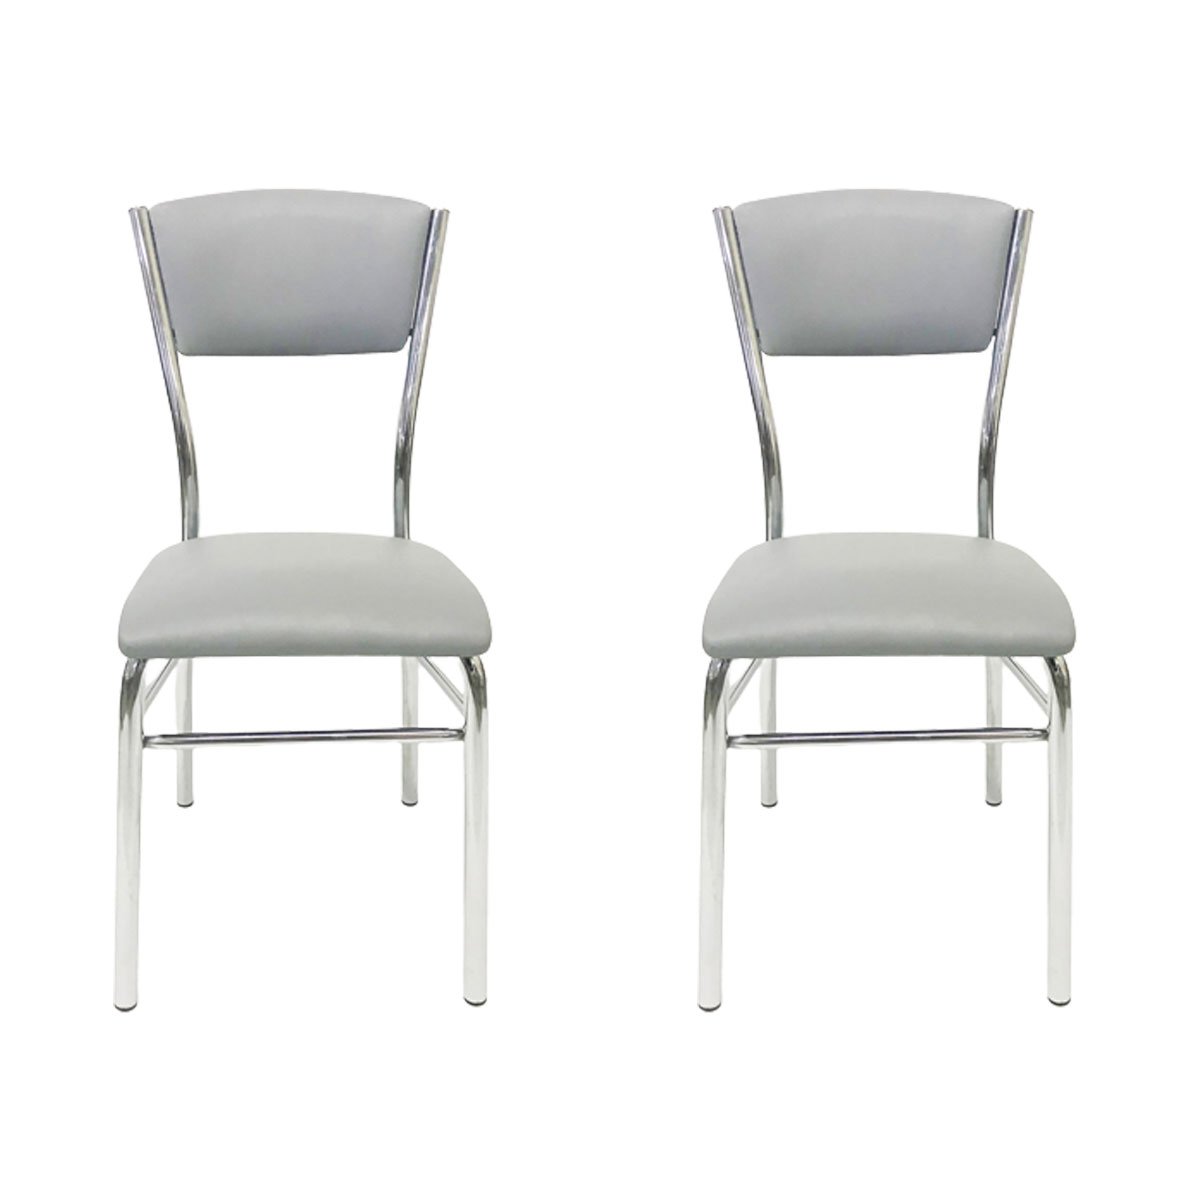 Kit 2 Cadeiras de Cozinha com Reforço Cromada Assento e Encosto Cinza - Poltronas do Sul